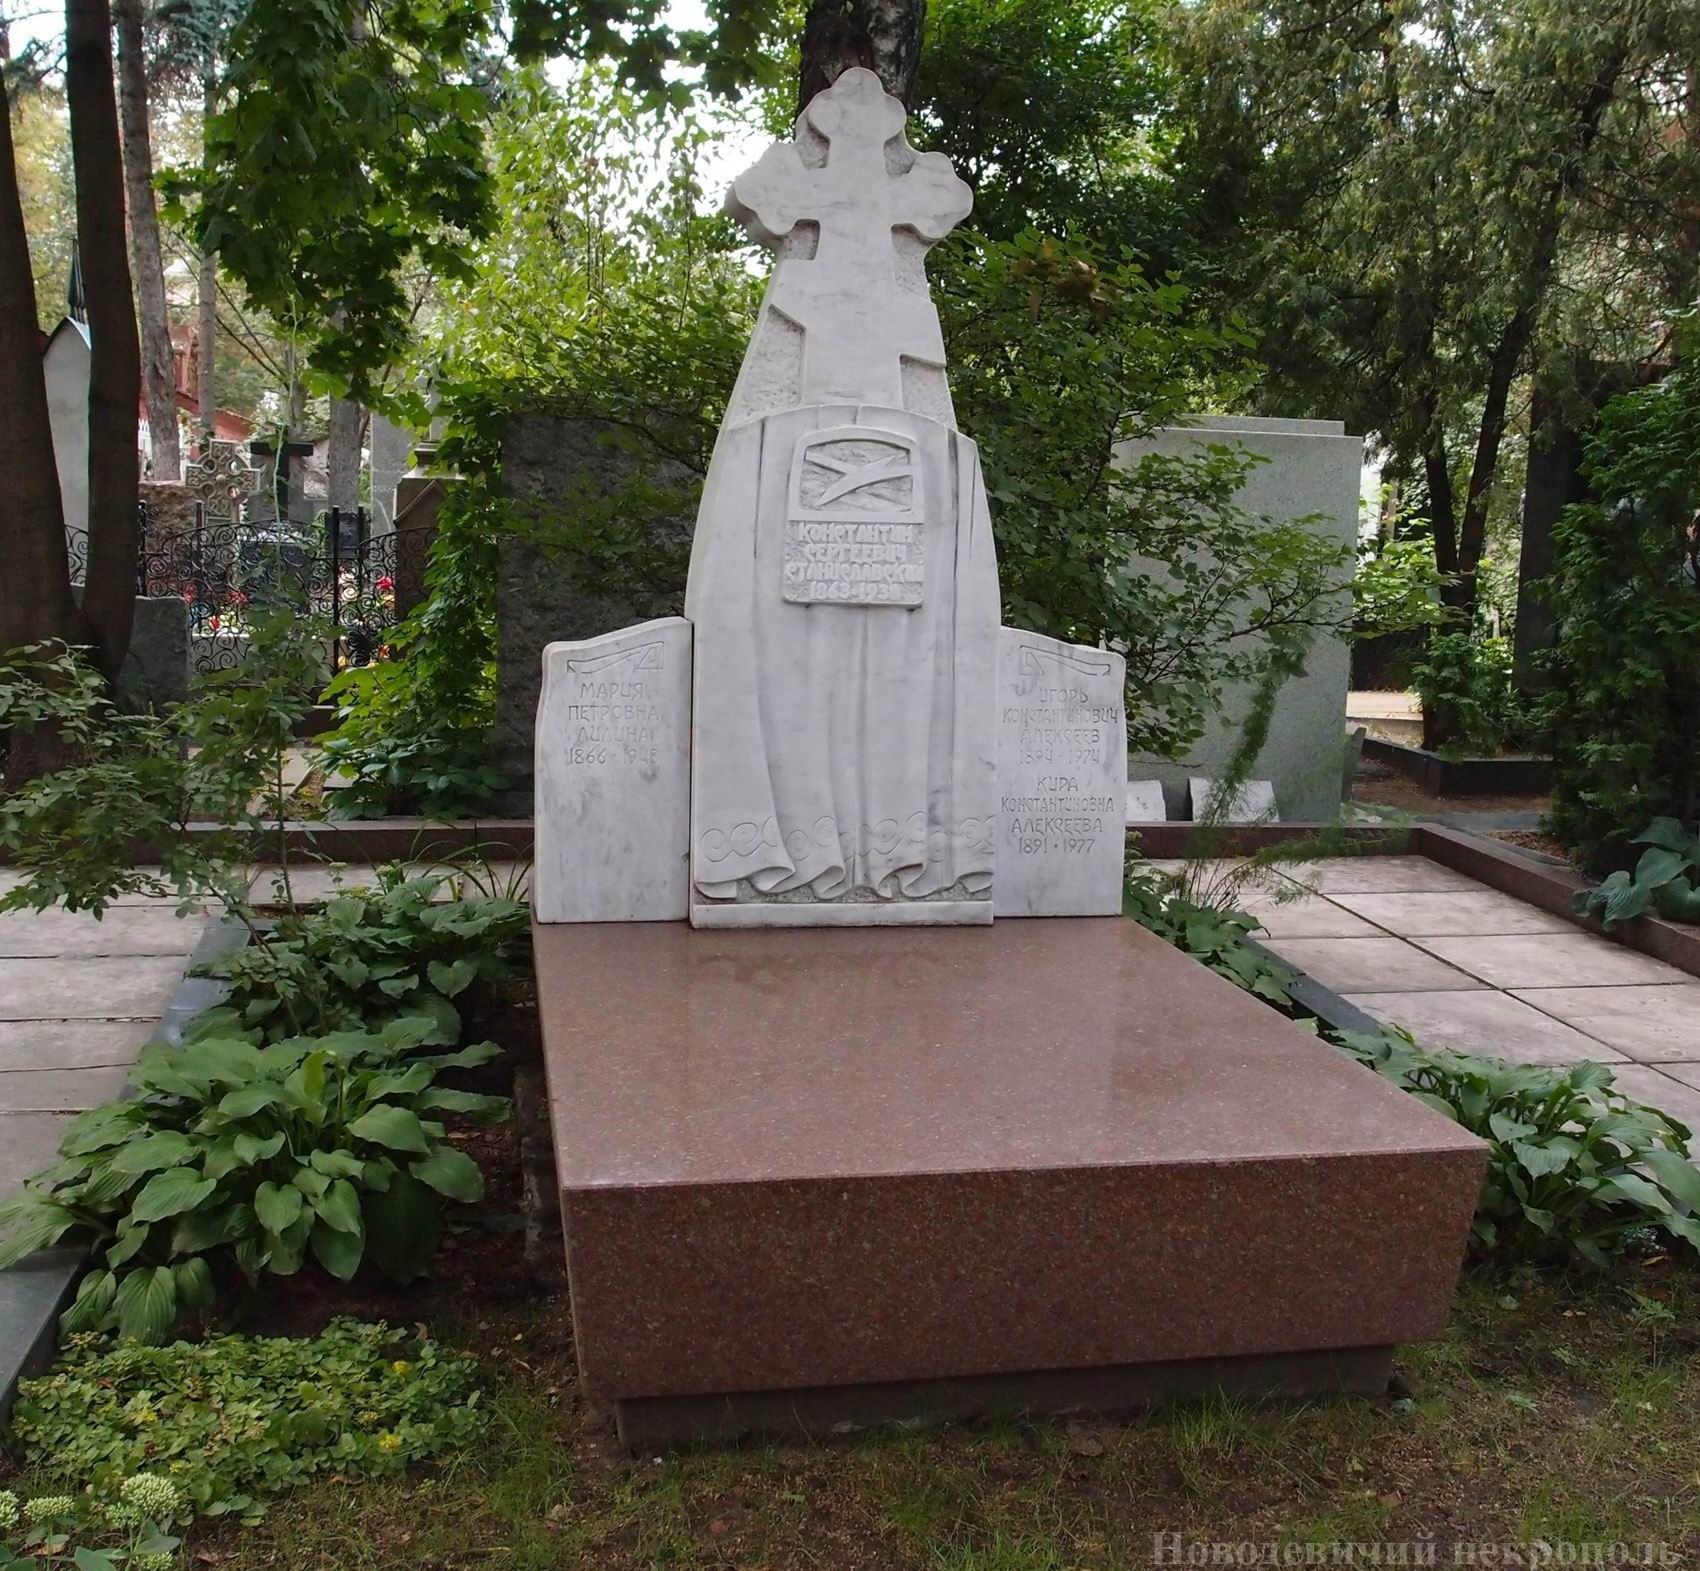 Памятник на могиле Станиславского К.С. (1863-1938), ск. С.Щербаков, арх. А.Душкин, на Новодевичьем кладбище (2-17а-12). Нажмите левую кнопку мыши, чтобы увидеть фрагменты памятника крупно.